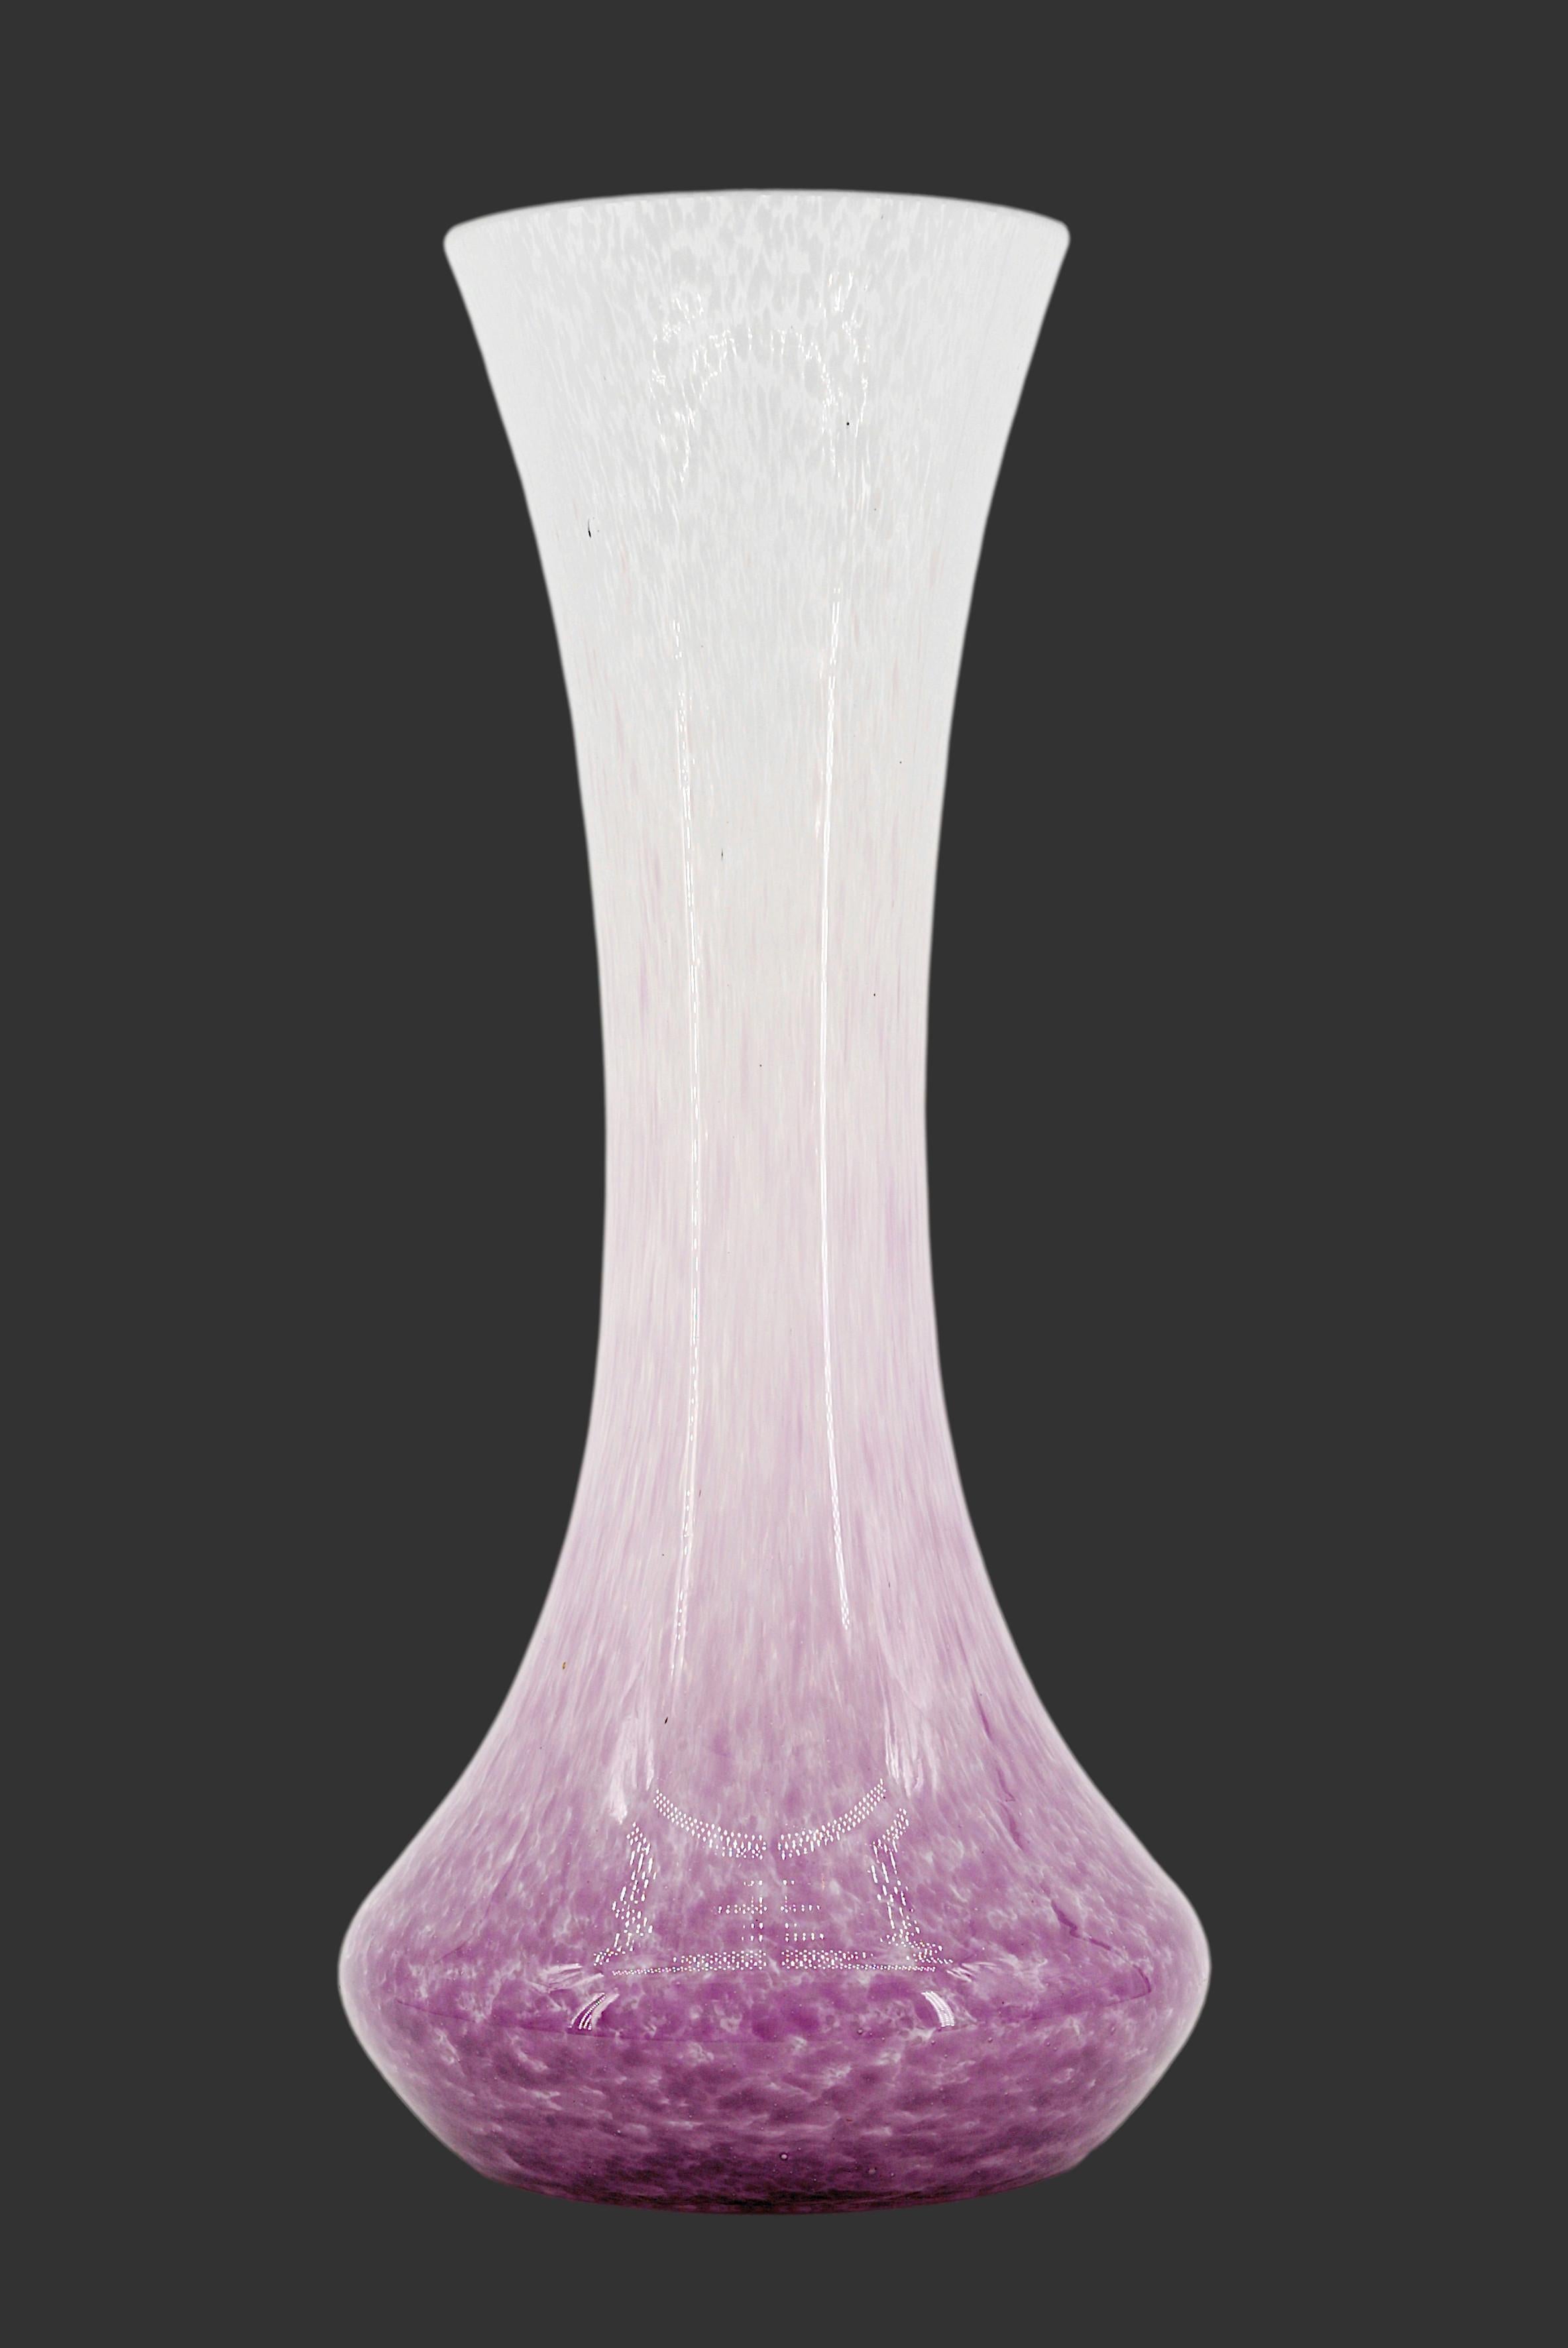 Französische Vase im Art déco-Stil von Andre DELATTE (Jarville, bei Nancy), Frankreich, Ende der 1920er Jahre. Gesprenkeltes Glas. Doppeltes Glas. Zwischen den beiden Schichten werden violette und weiße Emaillen aufgetragen. Höhe: 35cm (13.8